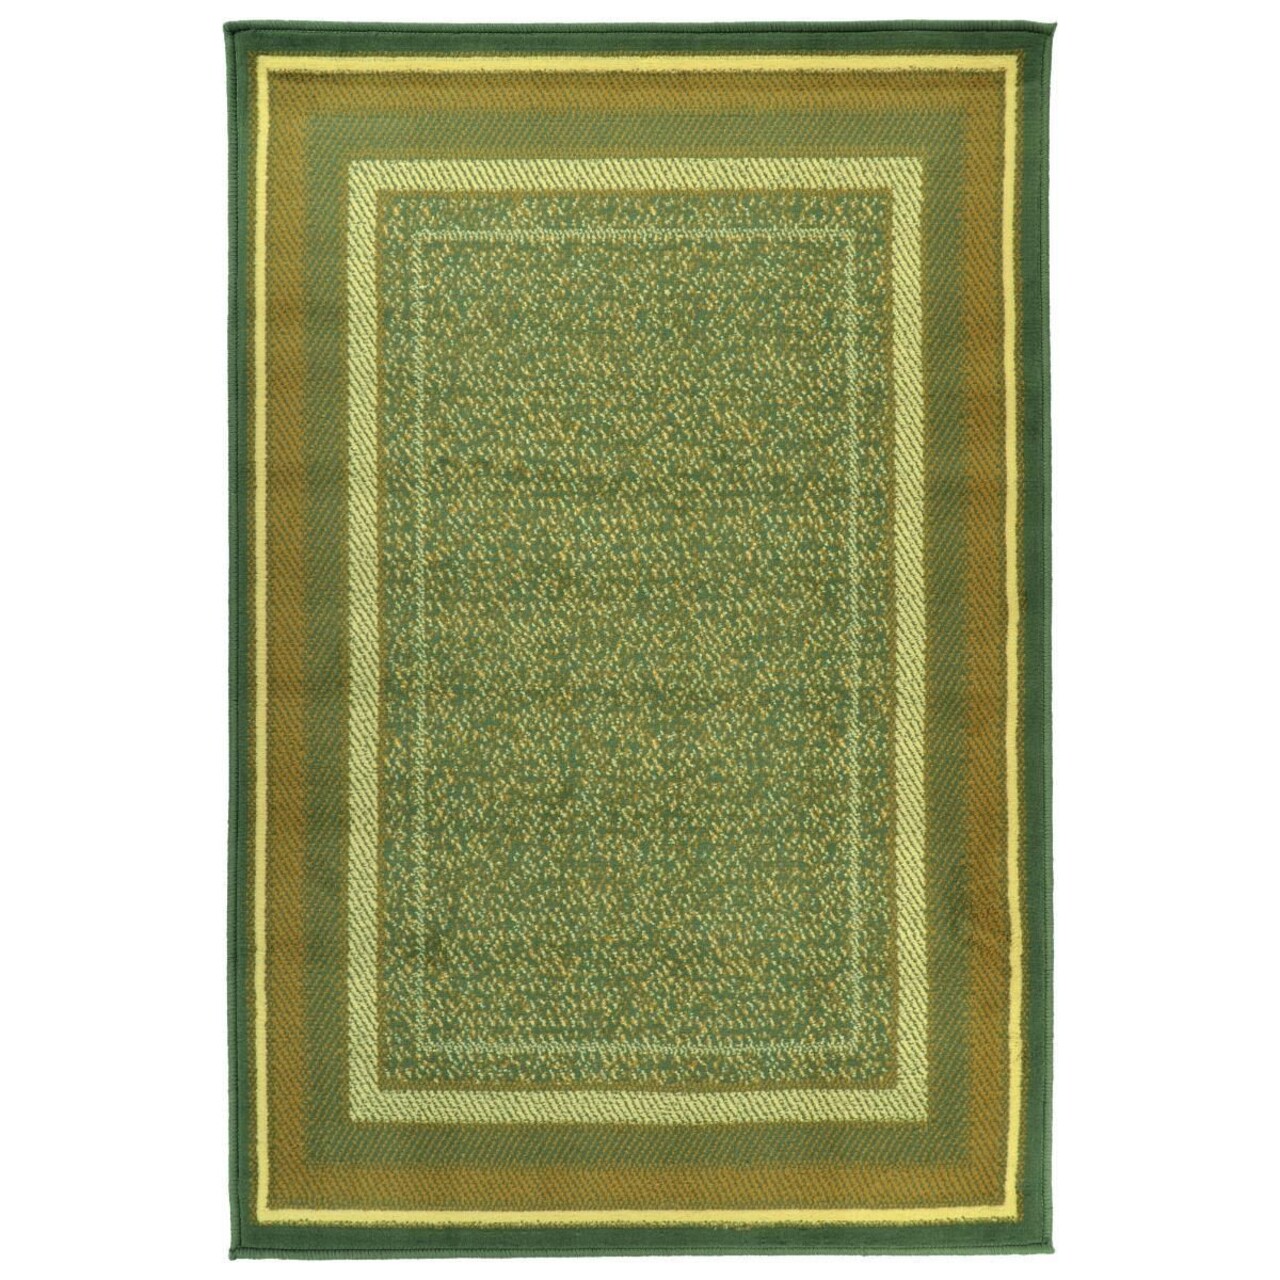 Home szőnyeg, decorino, 200x300 cm, polipropilén, színes